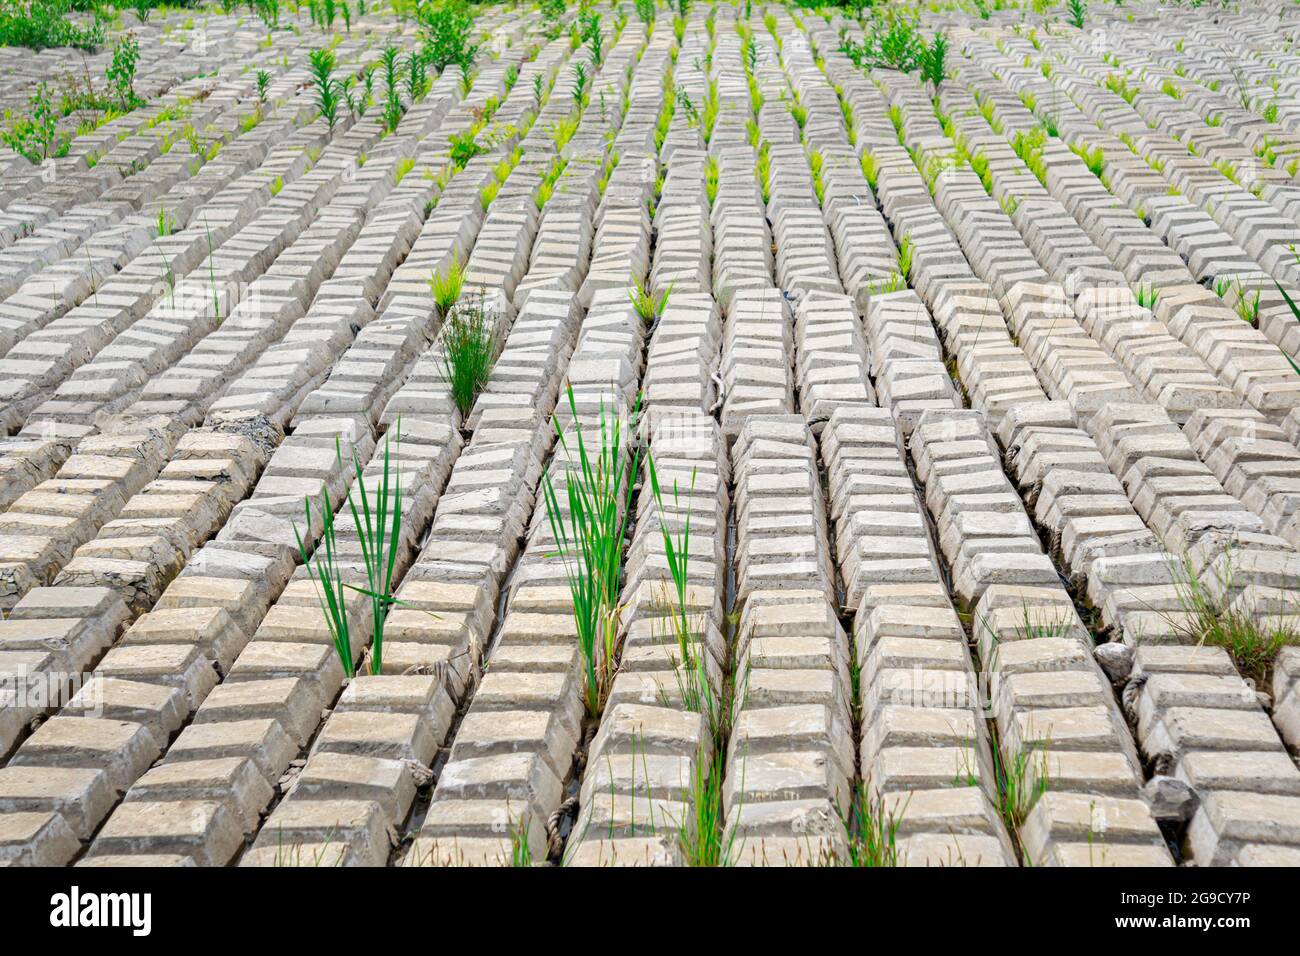 terreno cubierto con una alfombra de hormigón flexible para evitar la erosión, colocado en el suelo, con helechos creciendo a través de él Foto de stock